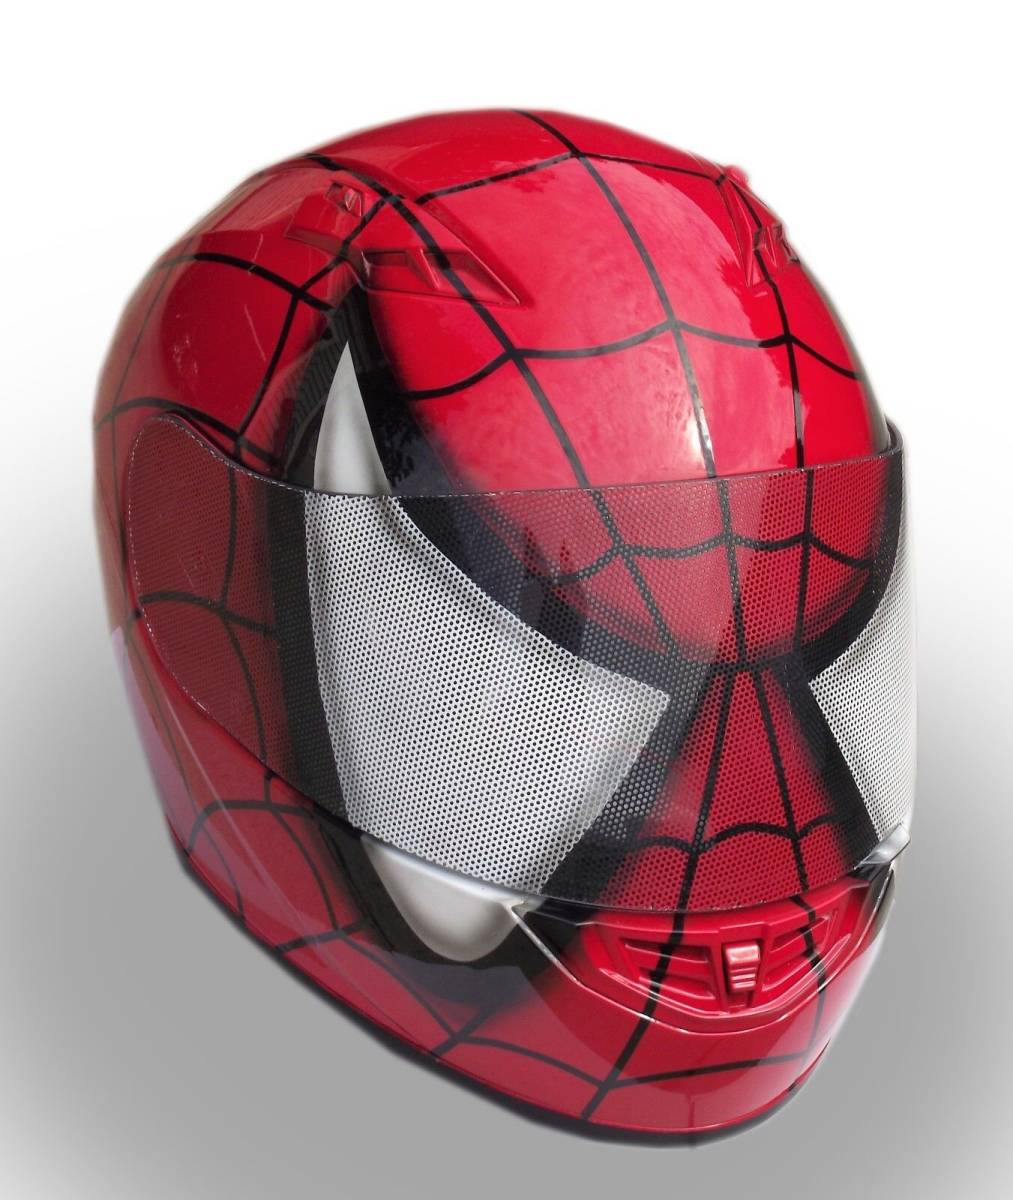  full-face helmet Spider-Man bike airbrush 